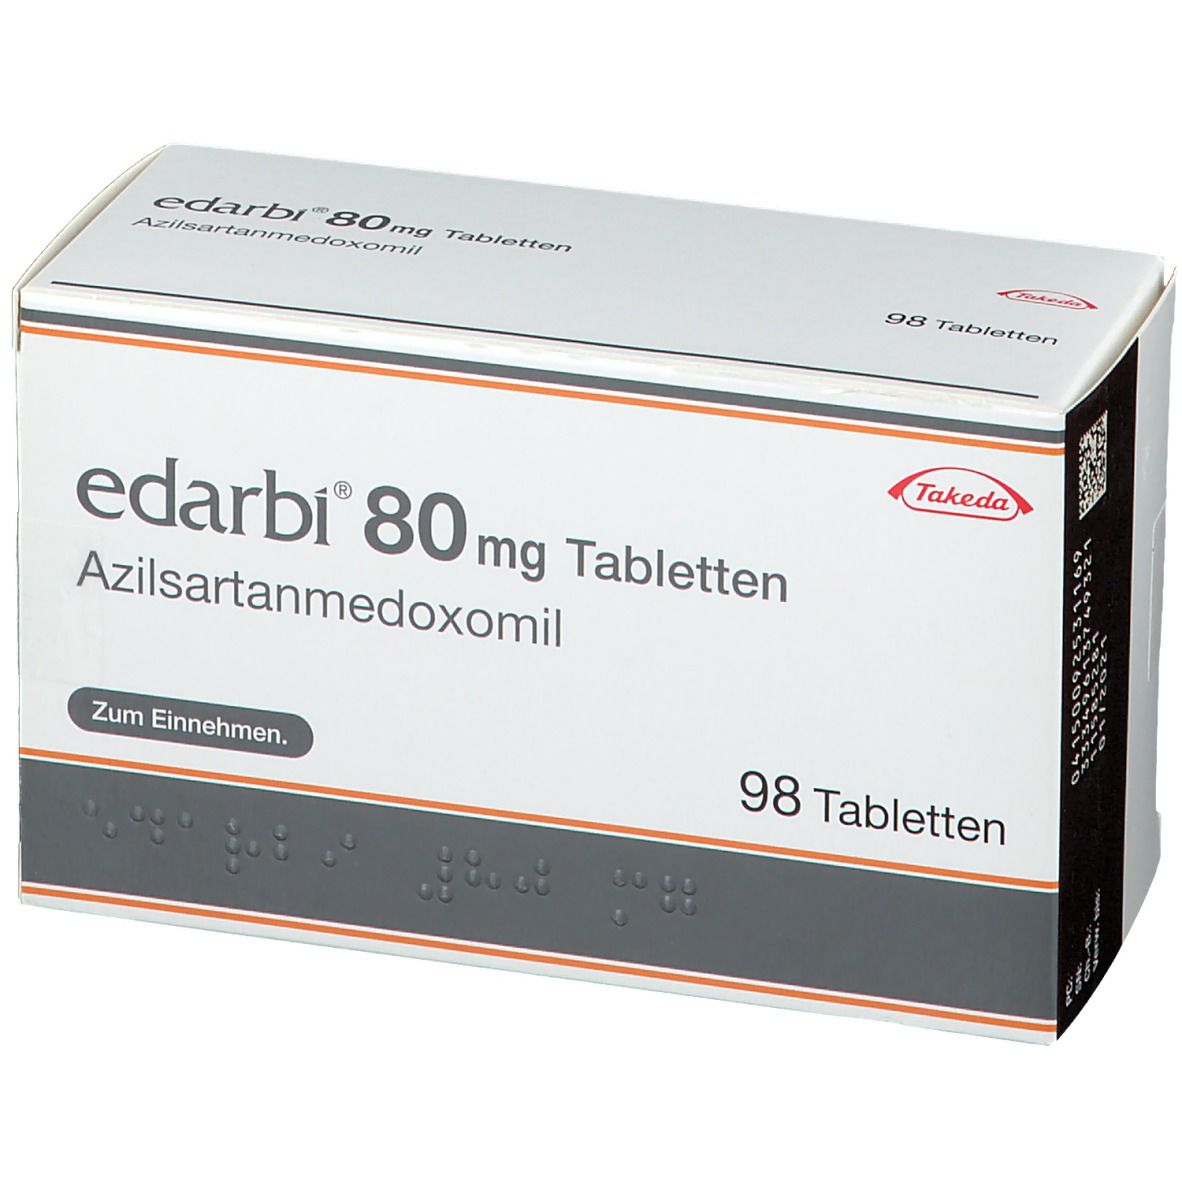 Edarbi® 80 mg